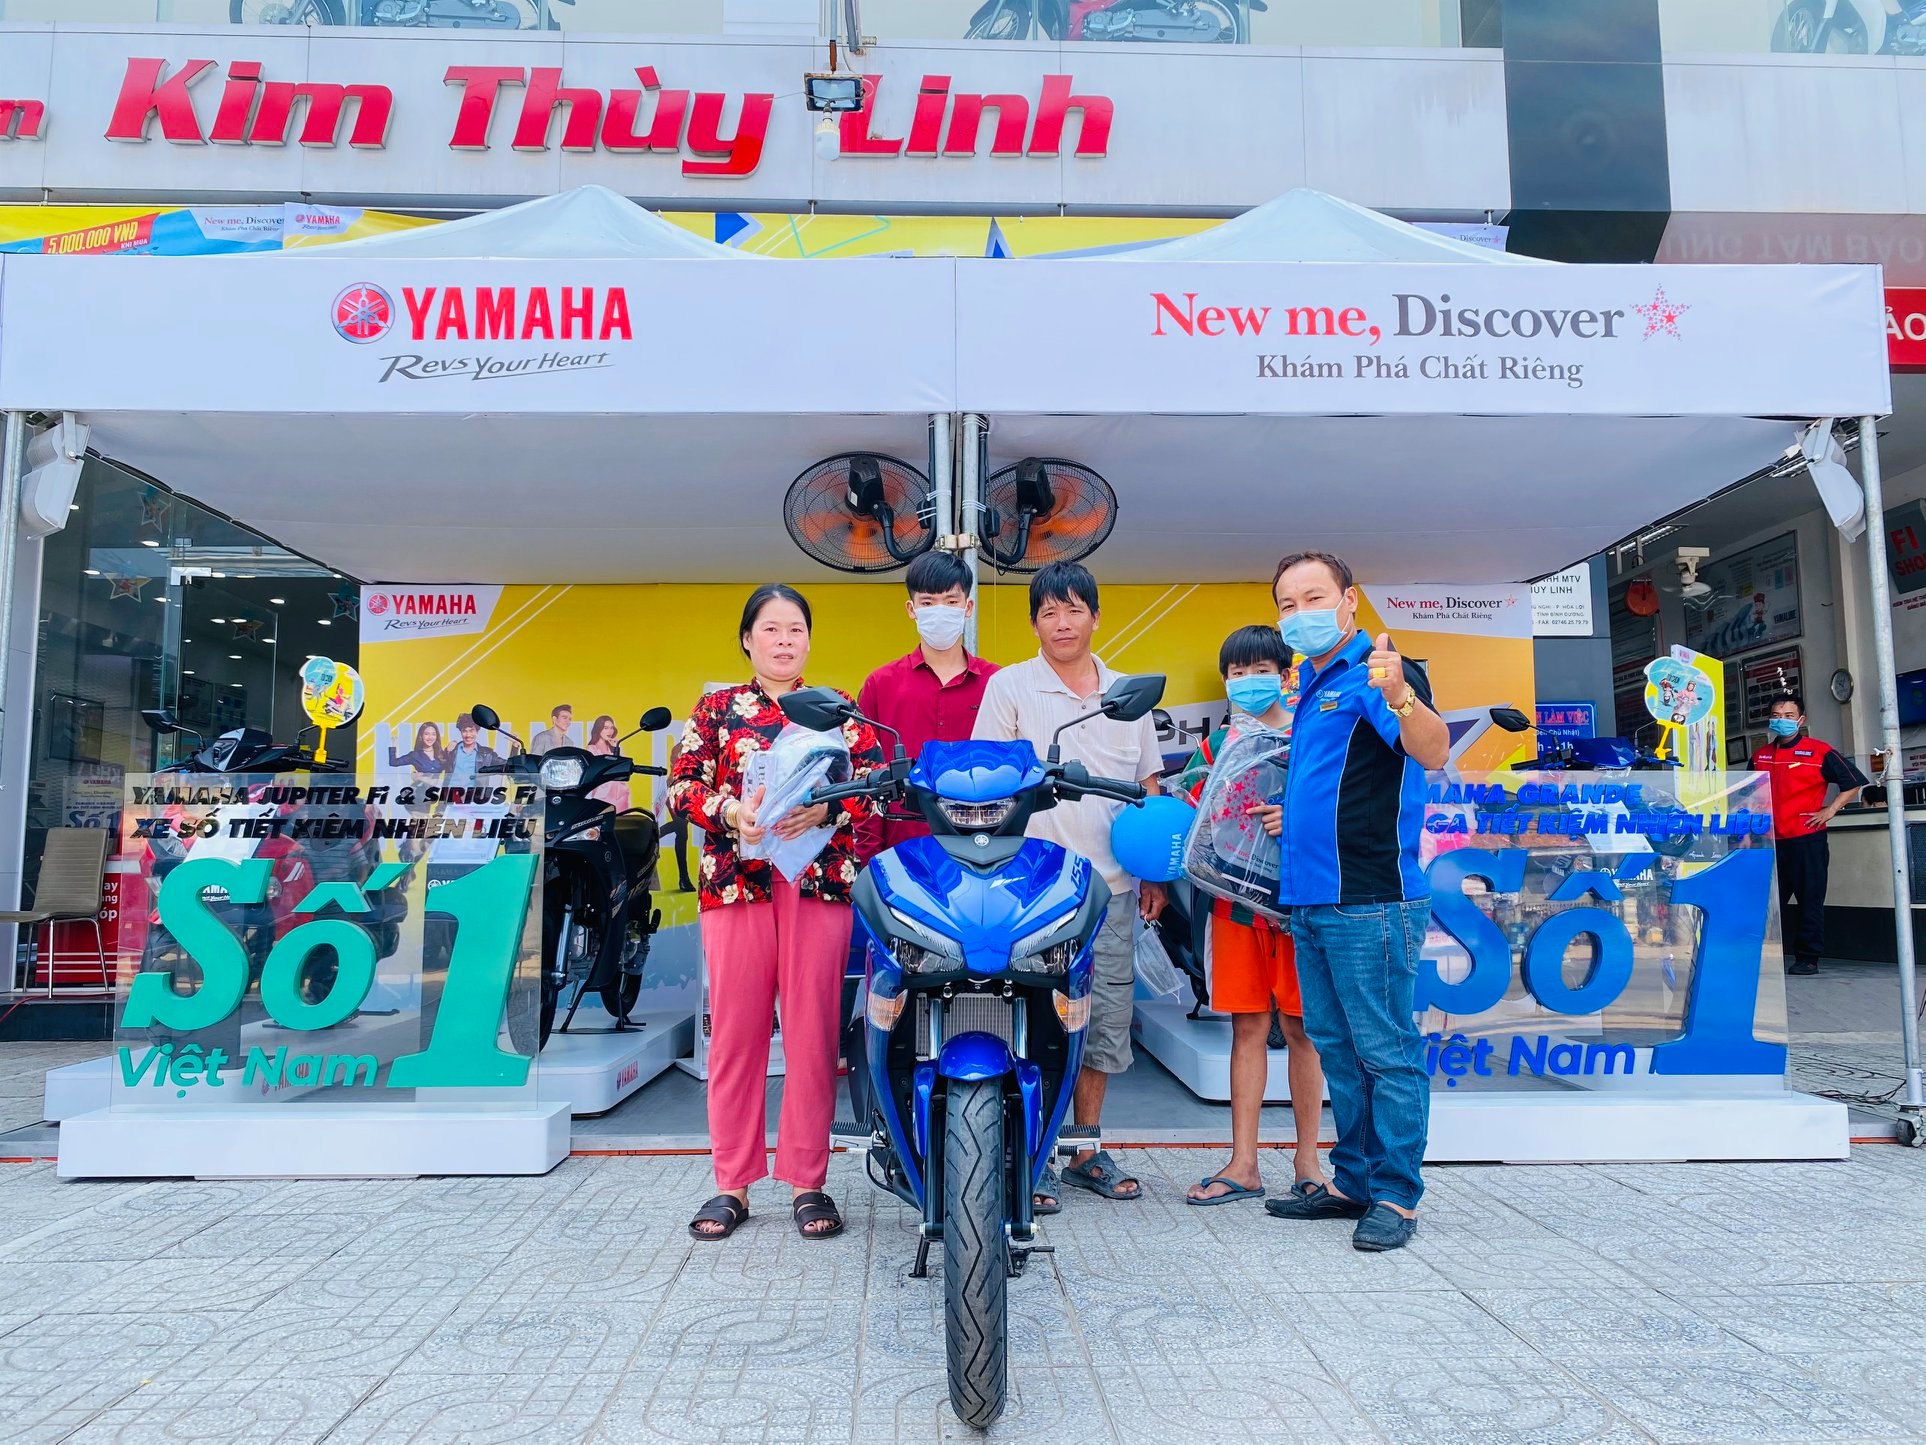 Giải quyết những thách thức tồn đọng cho chuỗi cửa hàng xe máy Kim Thùy Linh bằng phần mềm